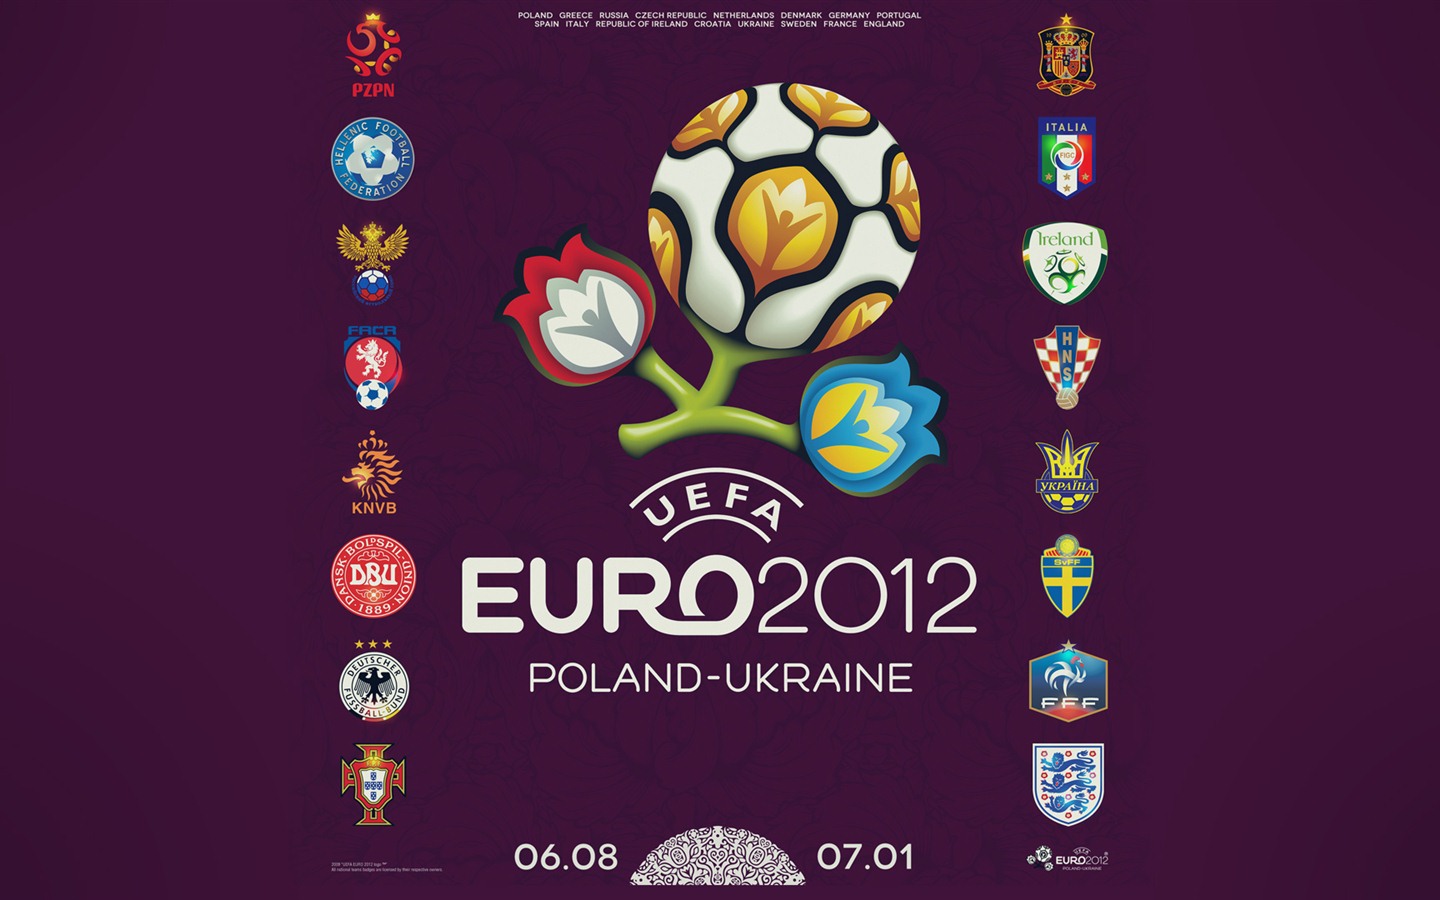 UEFA EURO 2012 欧洲足球锦标赛 高清壁纸(二)12 - 1440x900